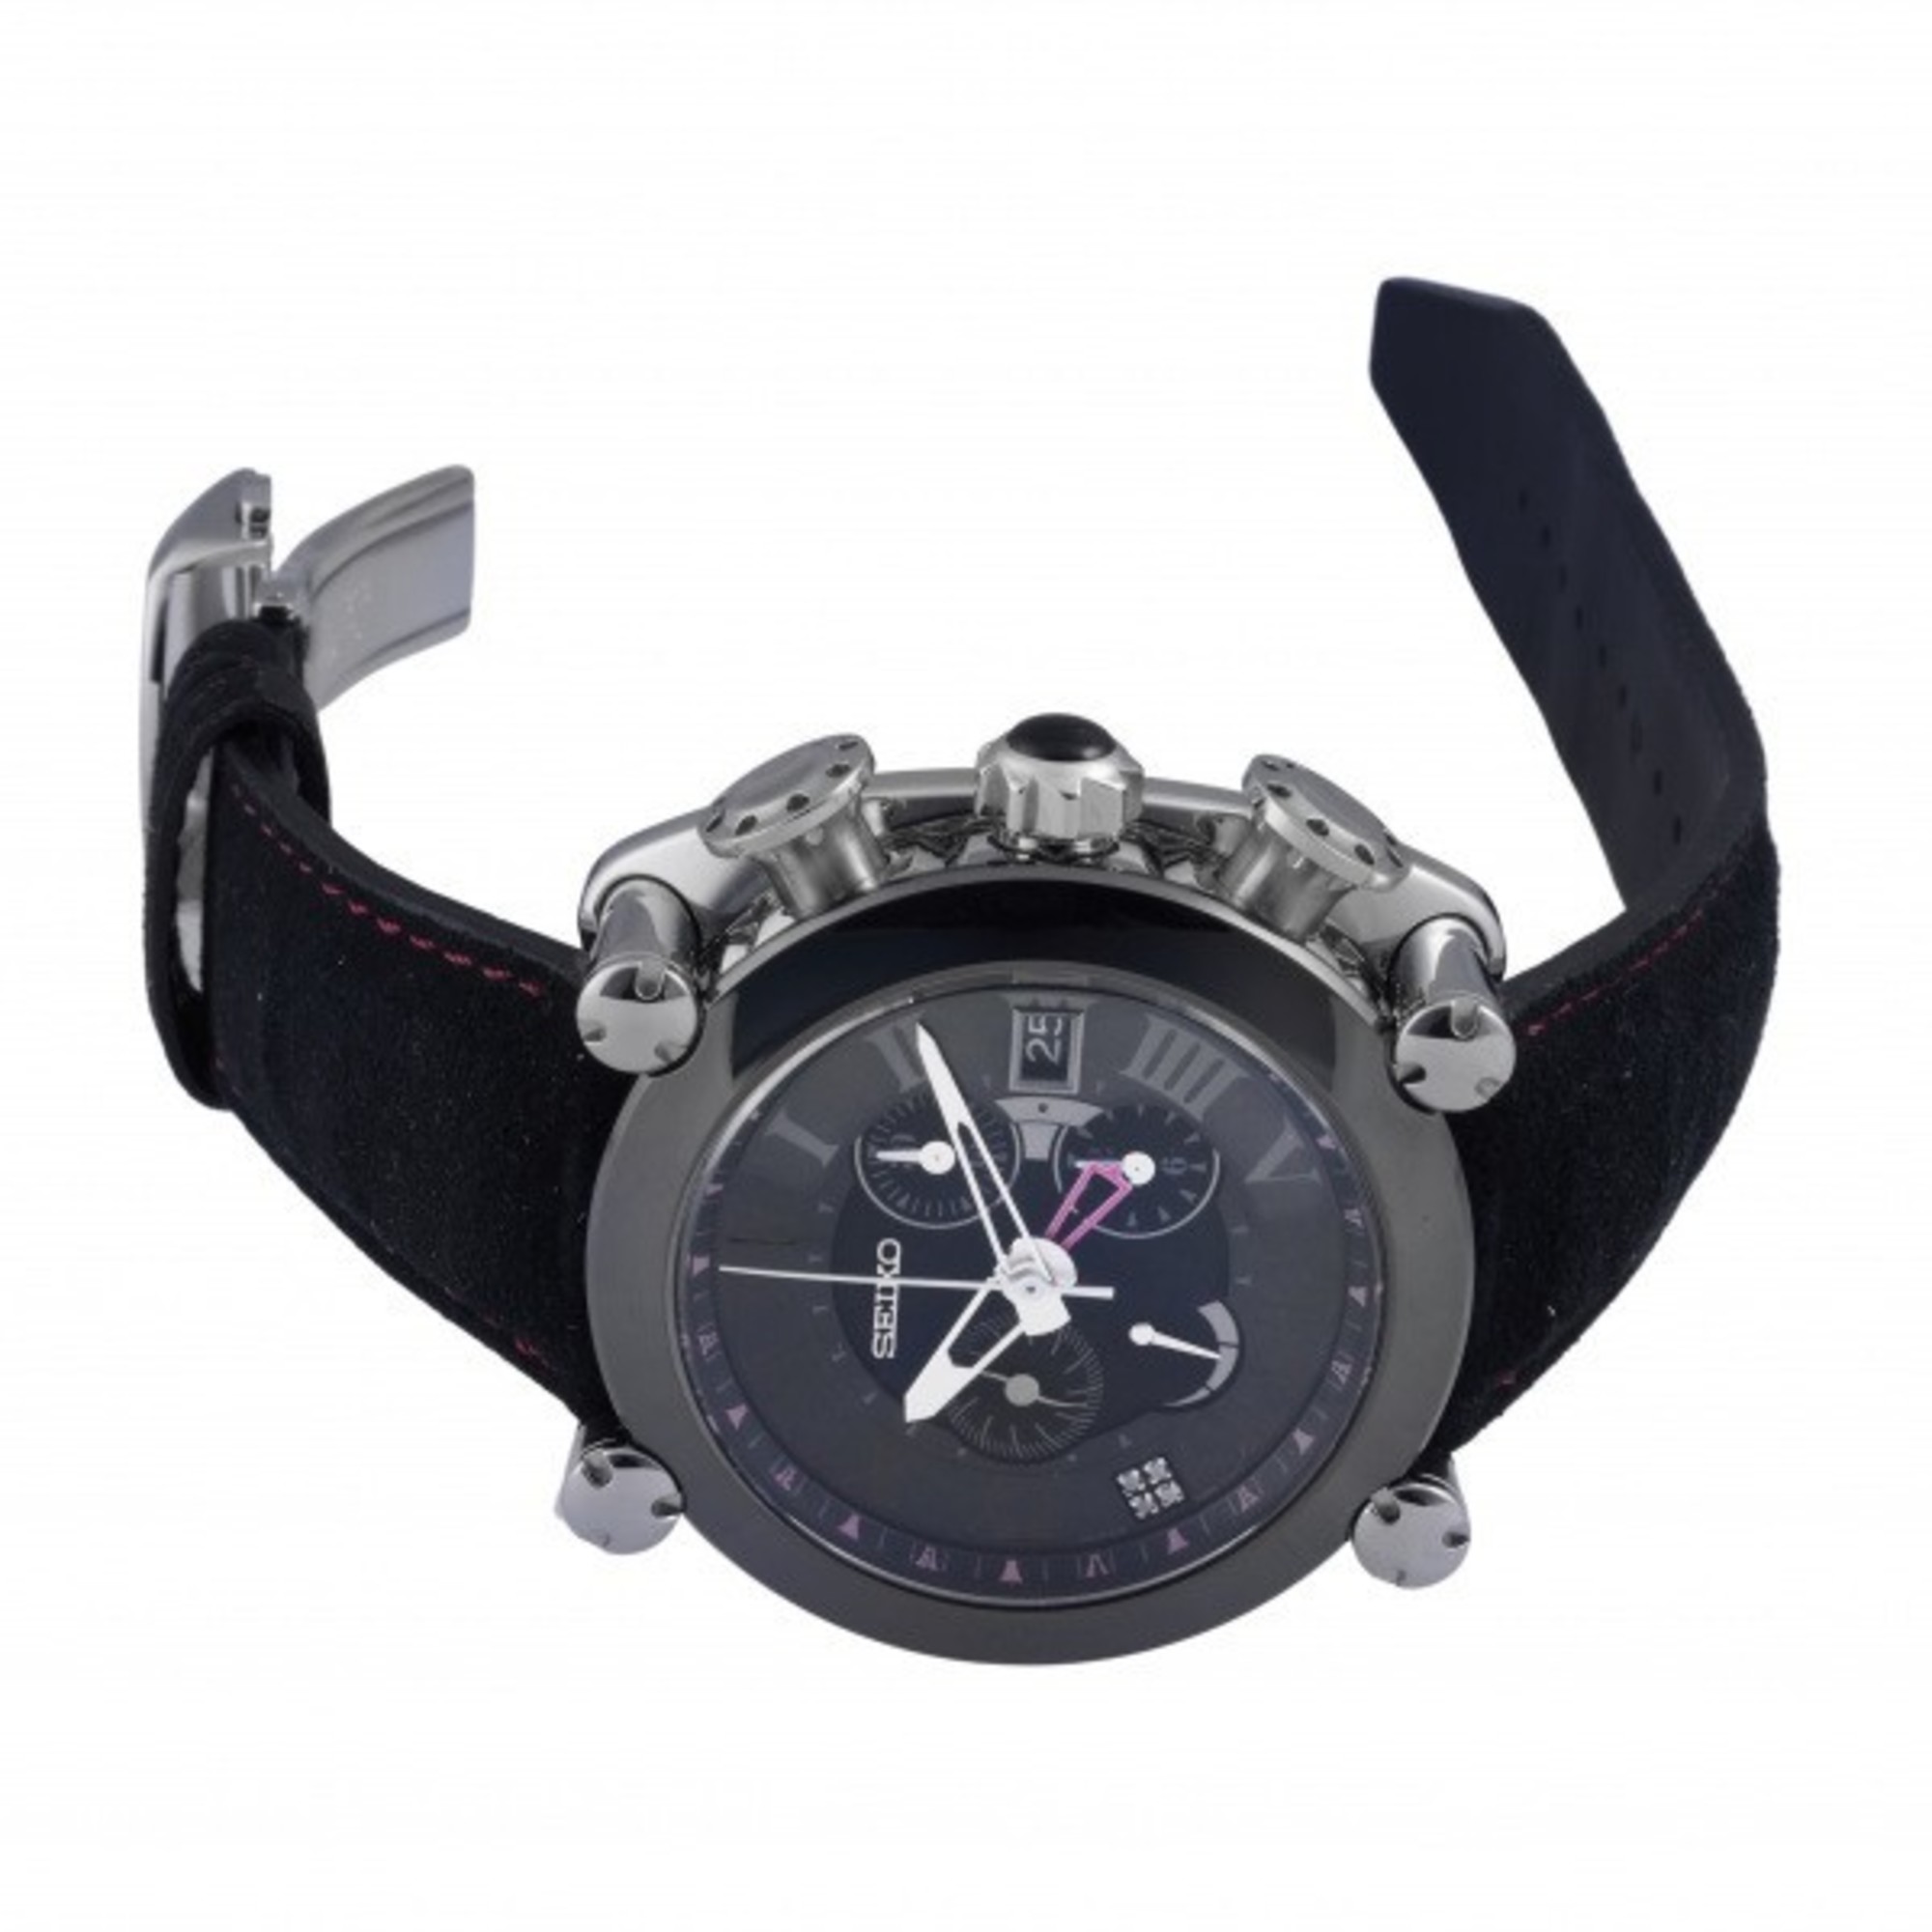 Seiko SEIKO galante SBLA107 black dial watch men's